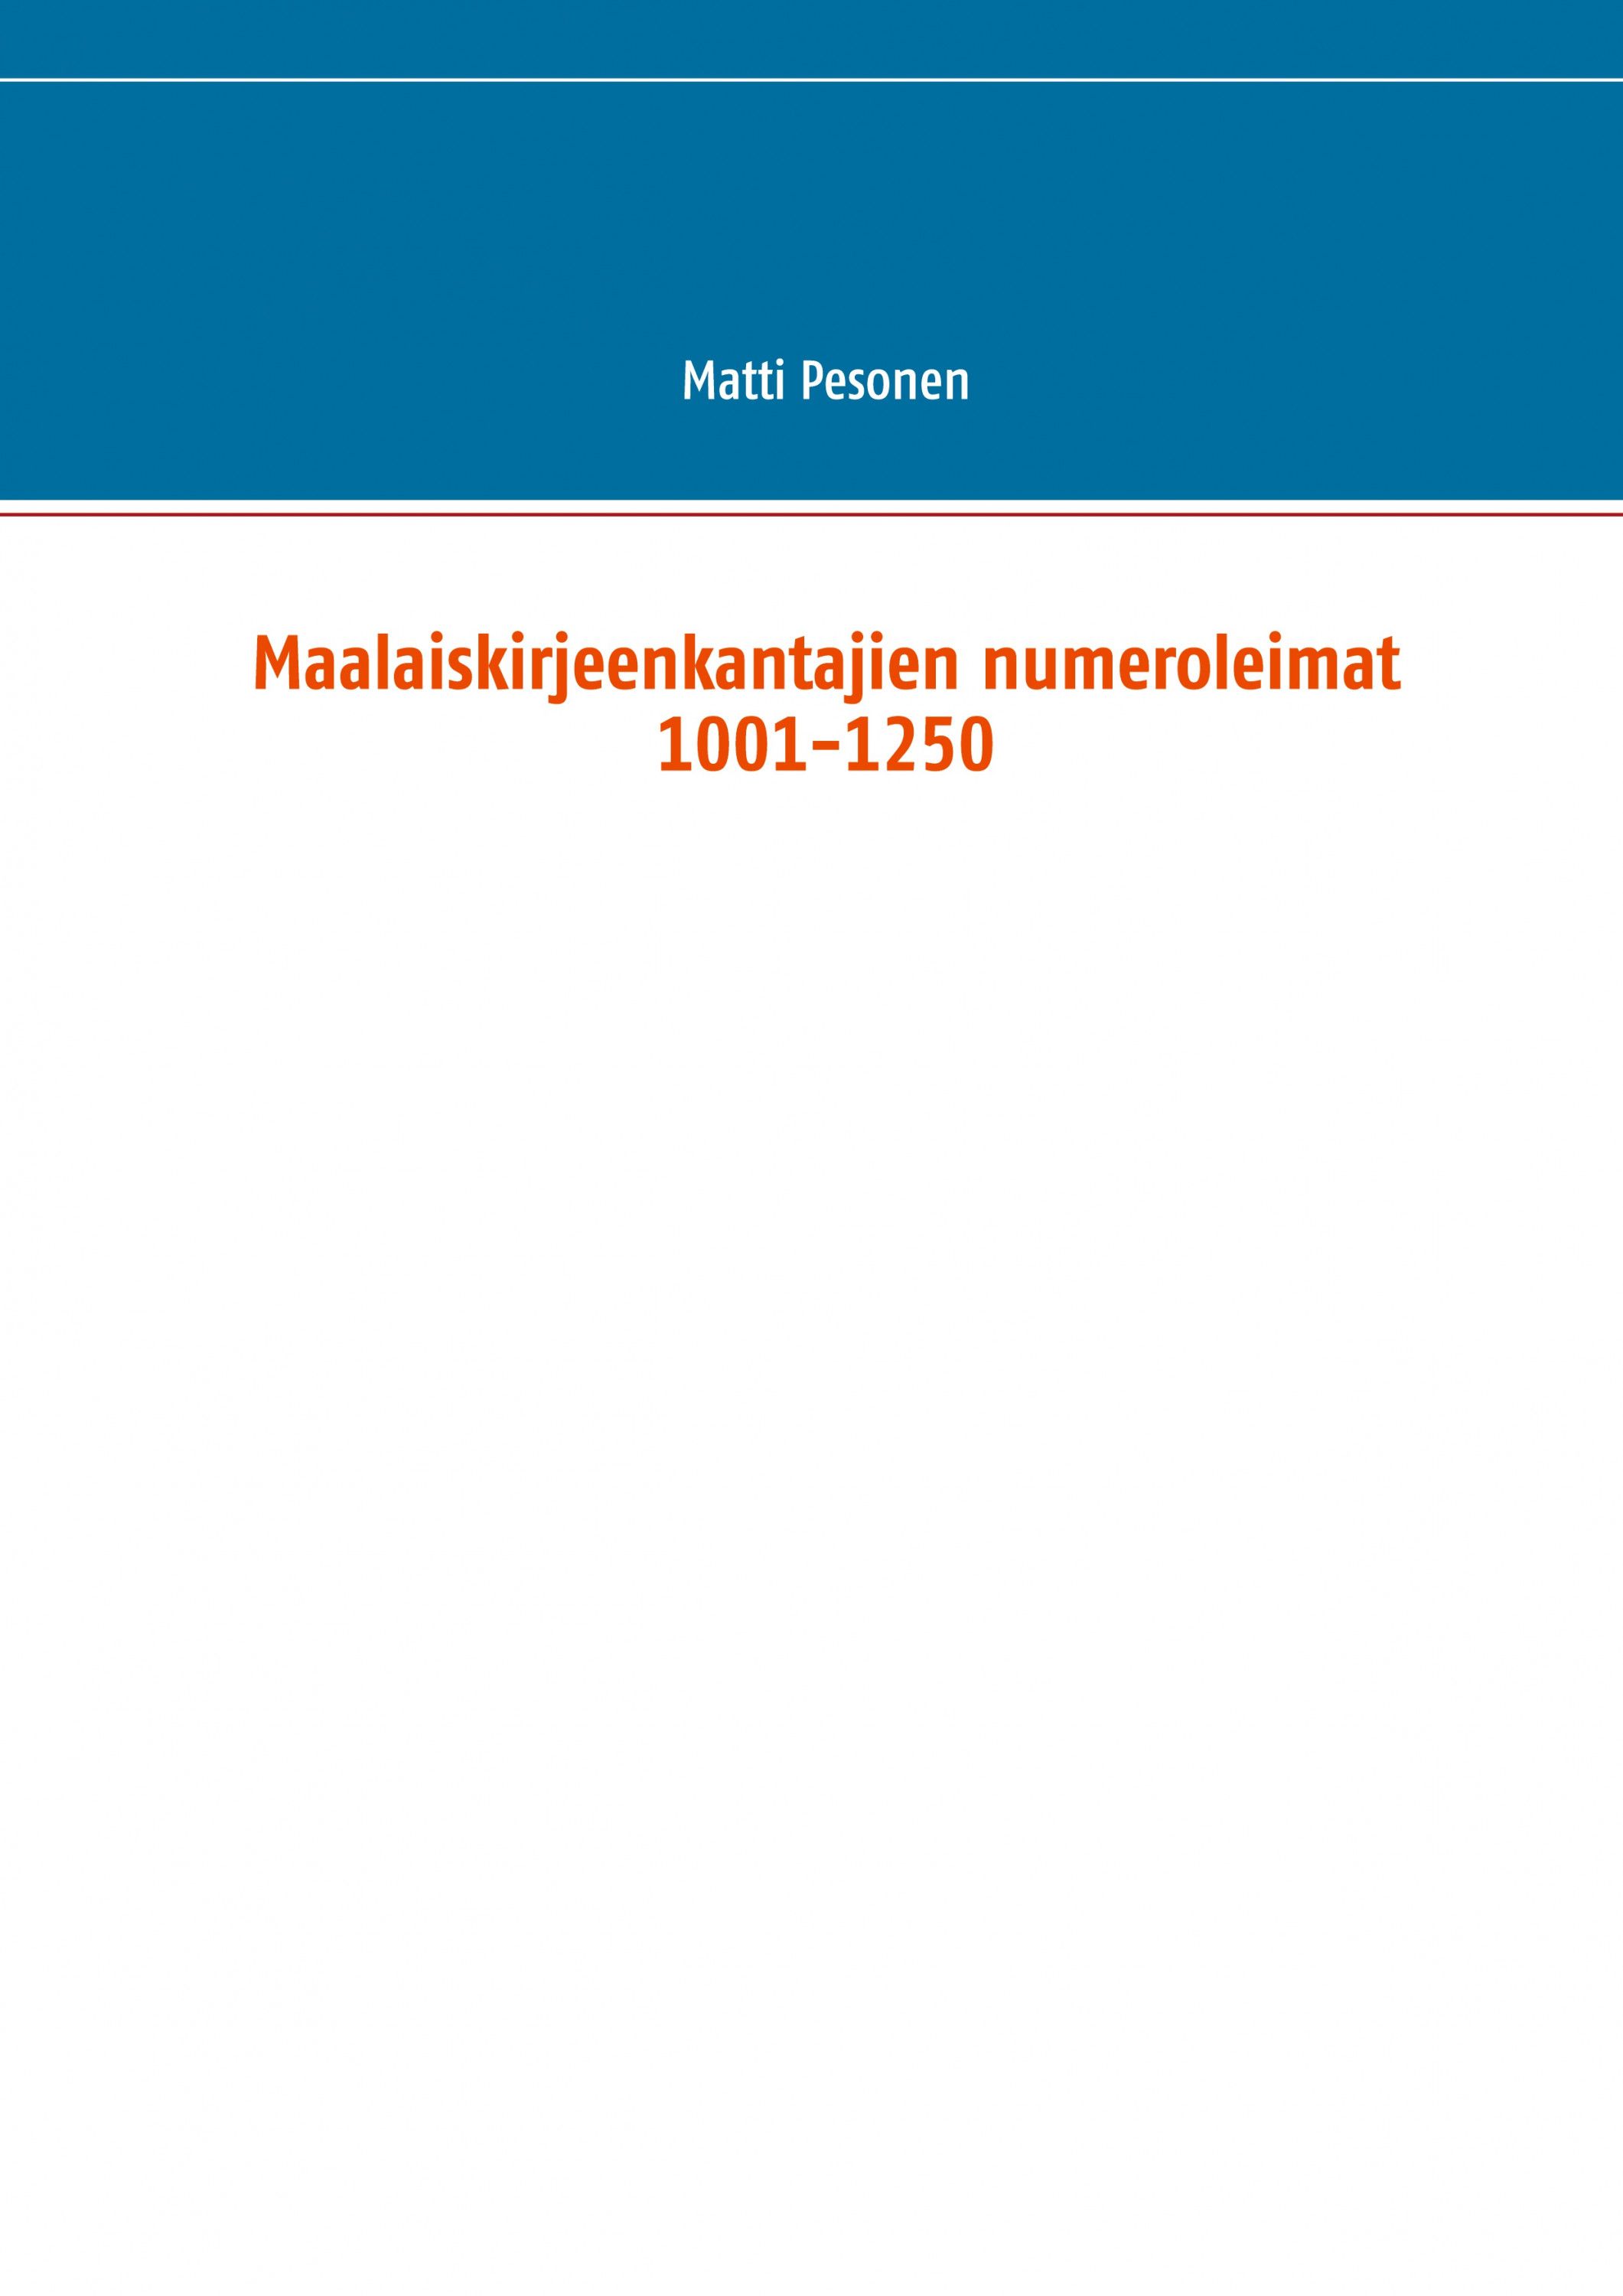 Matti Pesonen : Maalaiskirjeenkantajien numeroleimat 1001-1250